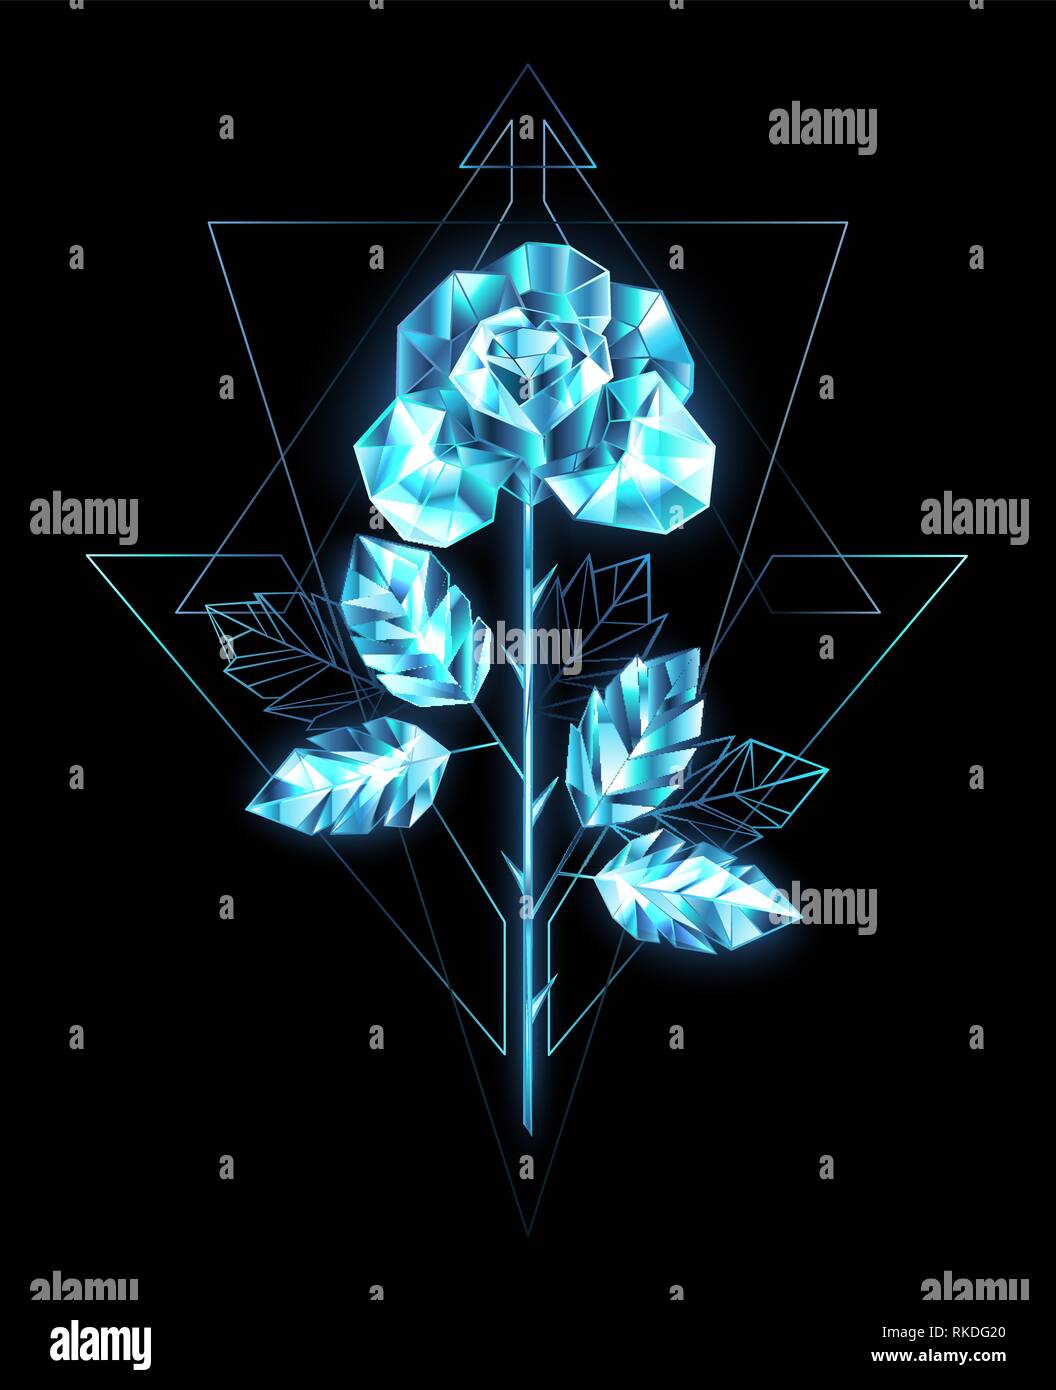 Poligonales, brillantes, cristalinas con rosas de tallo recto, transparente azul hielo sobre fondo negro. Ilustración del Vector